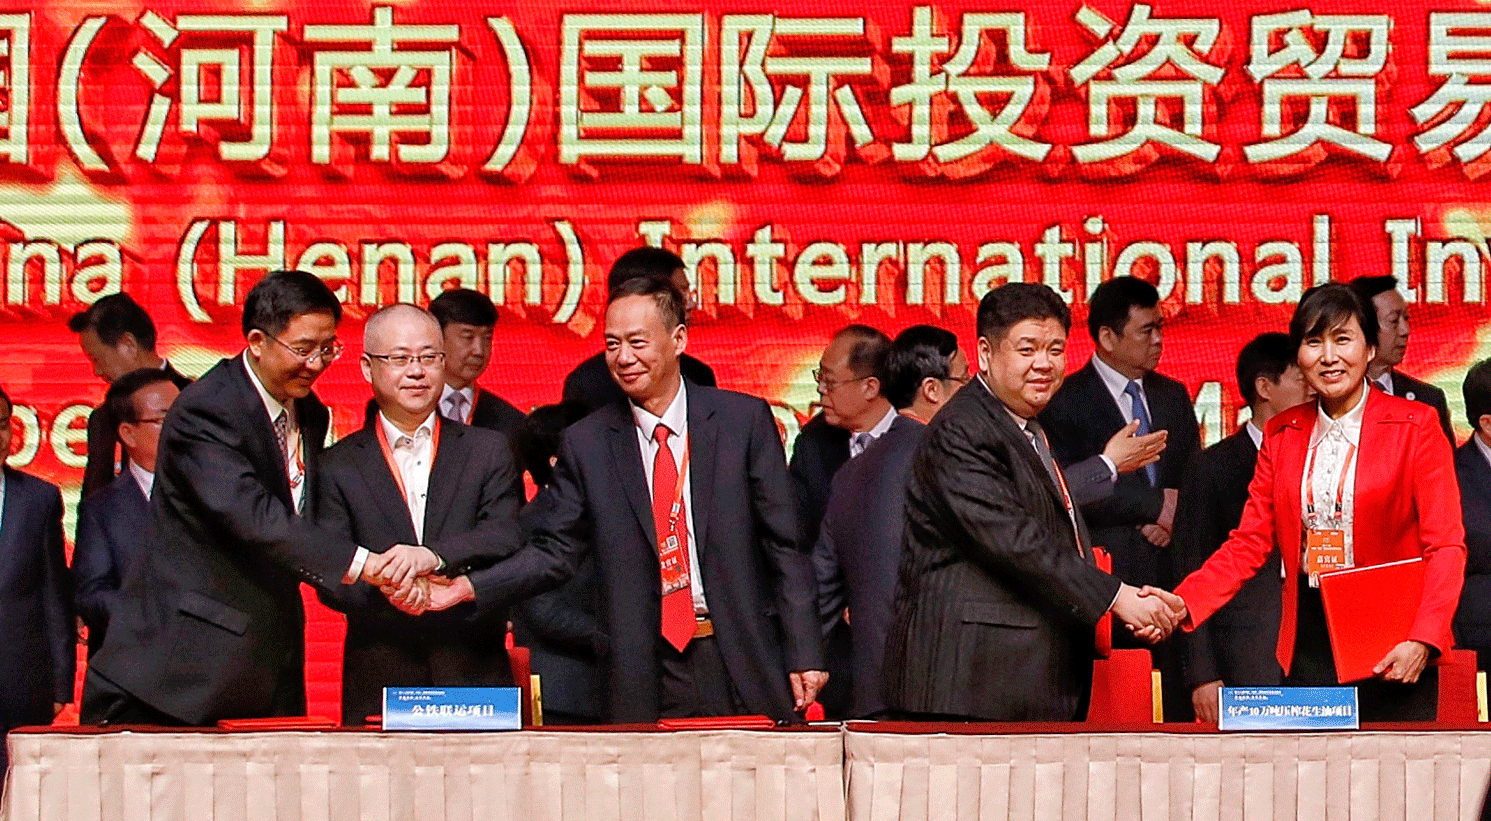 第十二屆中國（河南）國際投資貿易洽談會